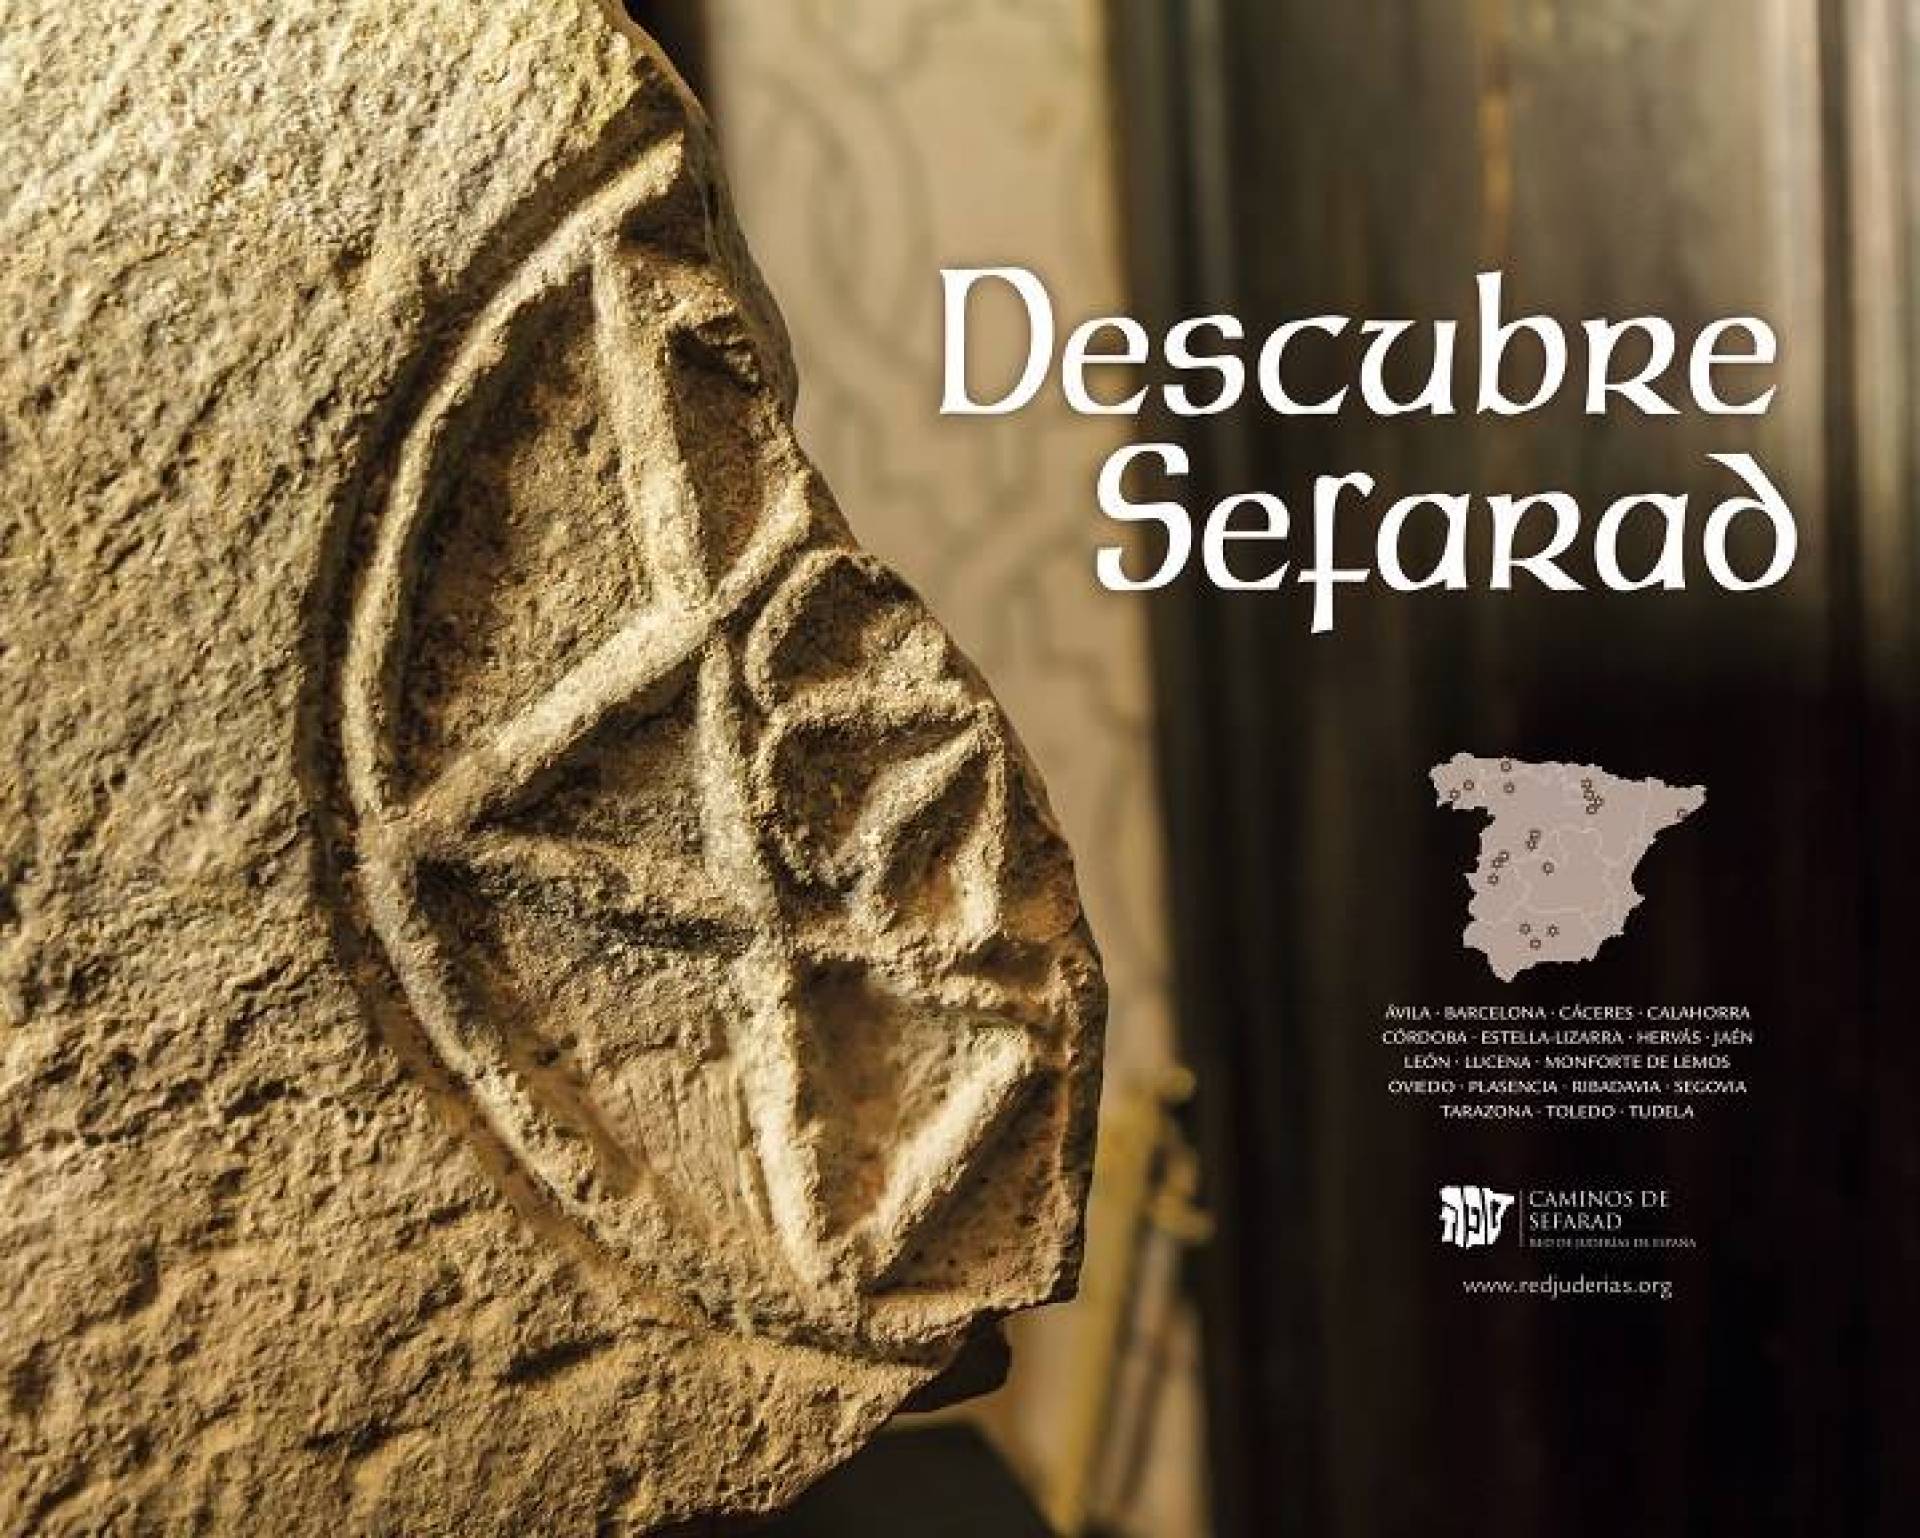 Descubre Sefarad - odkryj świat Żydów sefardyjskich